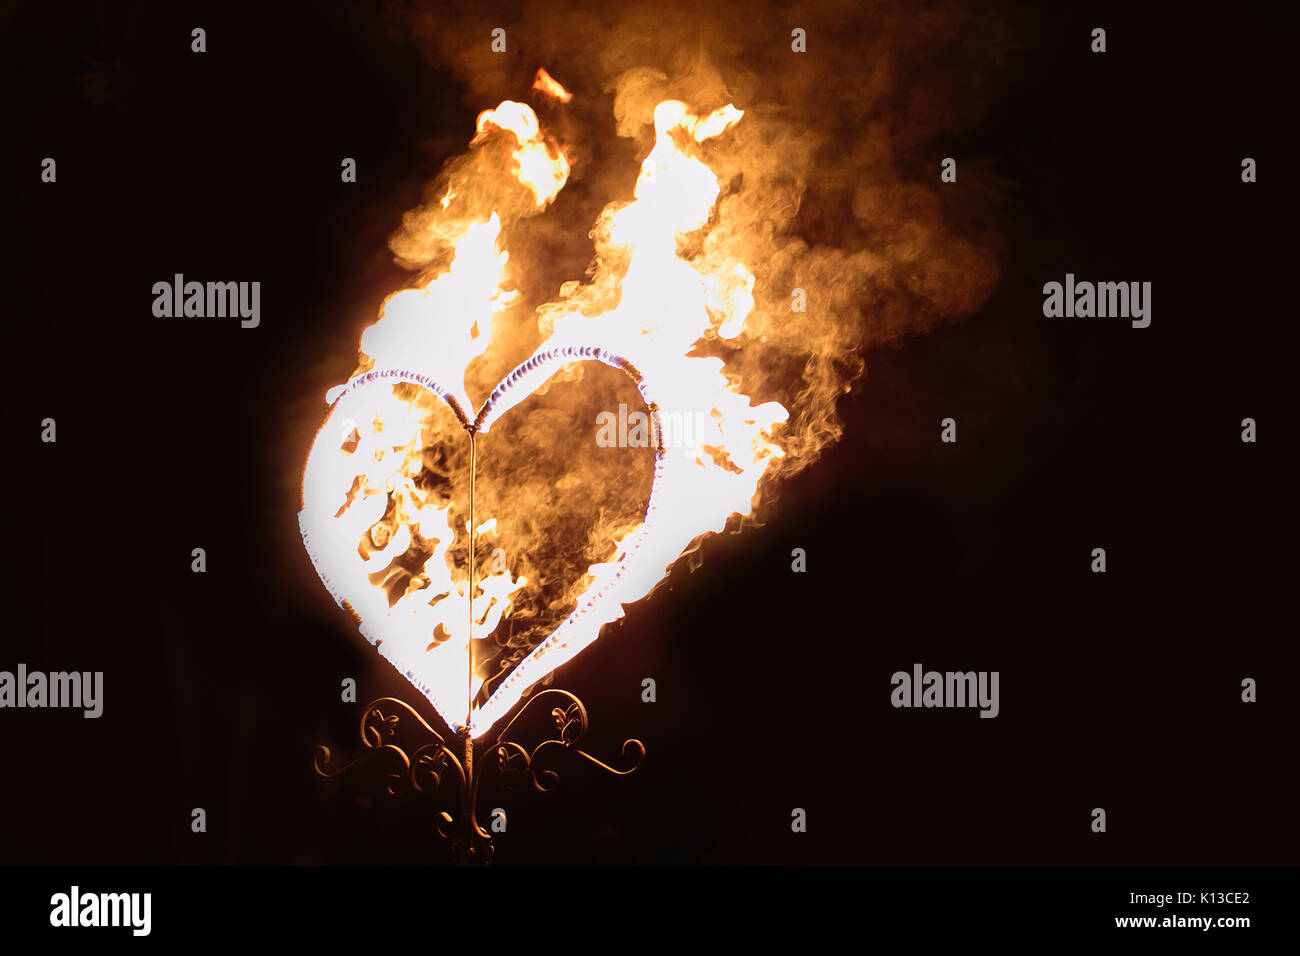 Fuego, sentimientos, simbolismo concepto. en la oscuridad hay un gran corazón cubierto en llamas de color naranja brillante como símbolo del amor que siempre gana w Foto de stock